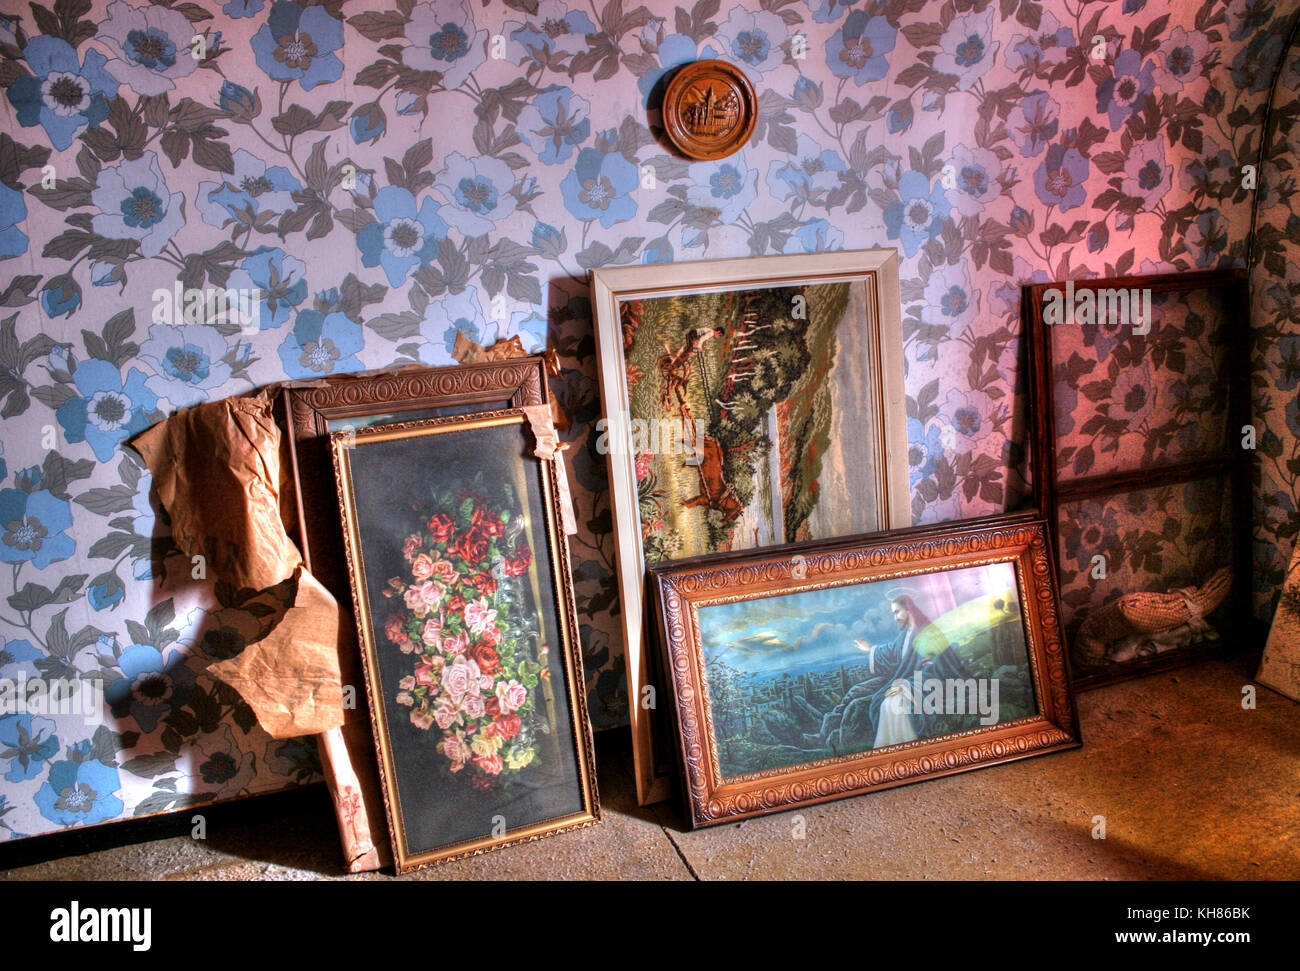 Belgio: HAUNTING immagini hanno rivelato una notevole collezione di trofei in una casa abbandonata che sembra come se essa è stata congelata nel tempo. La seri Foto Stock